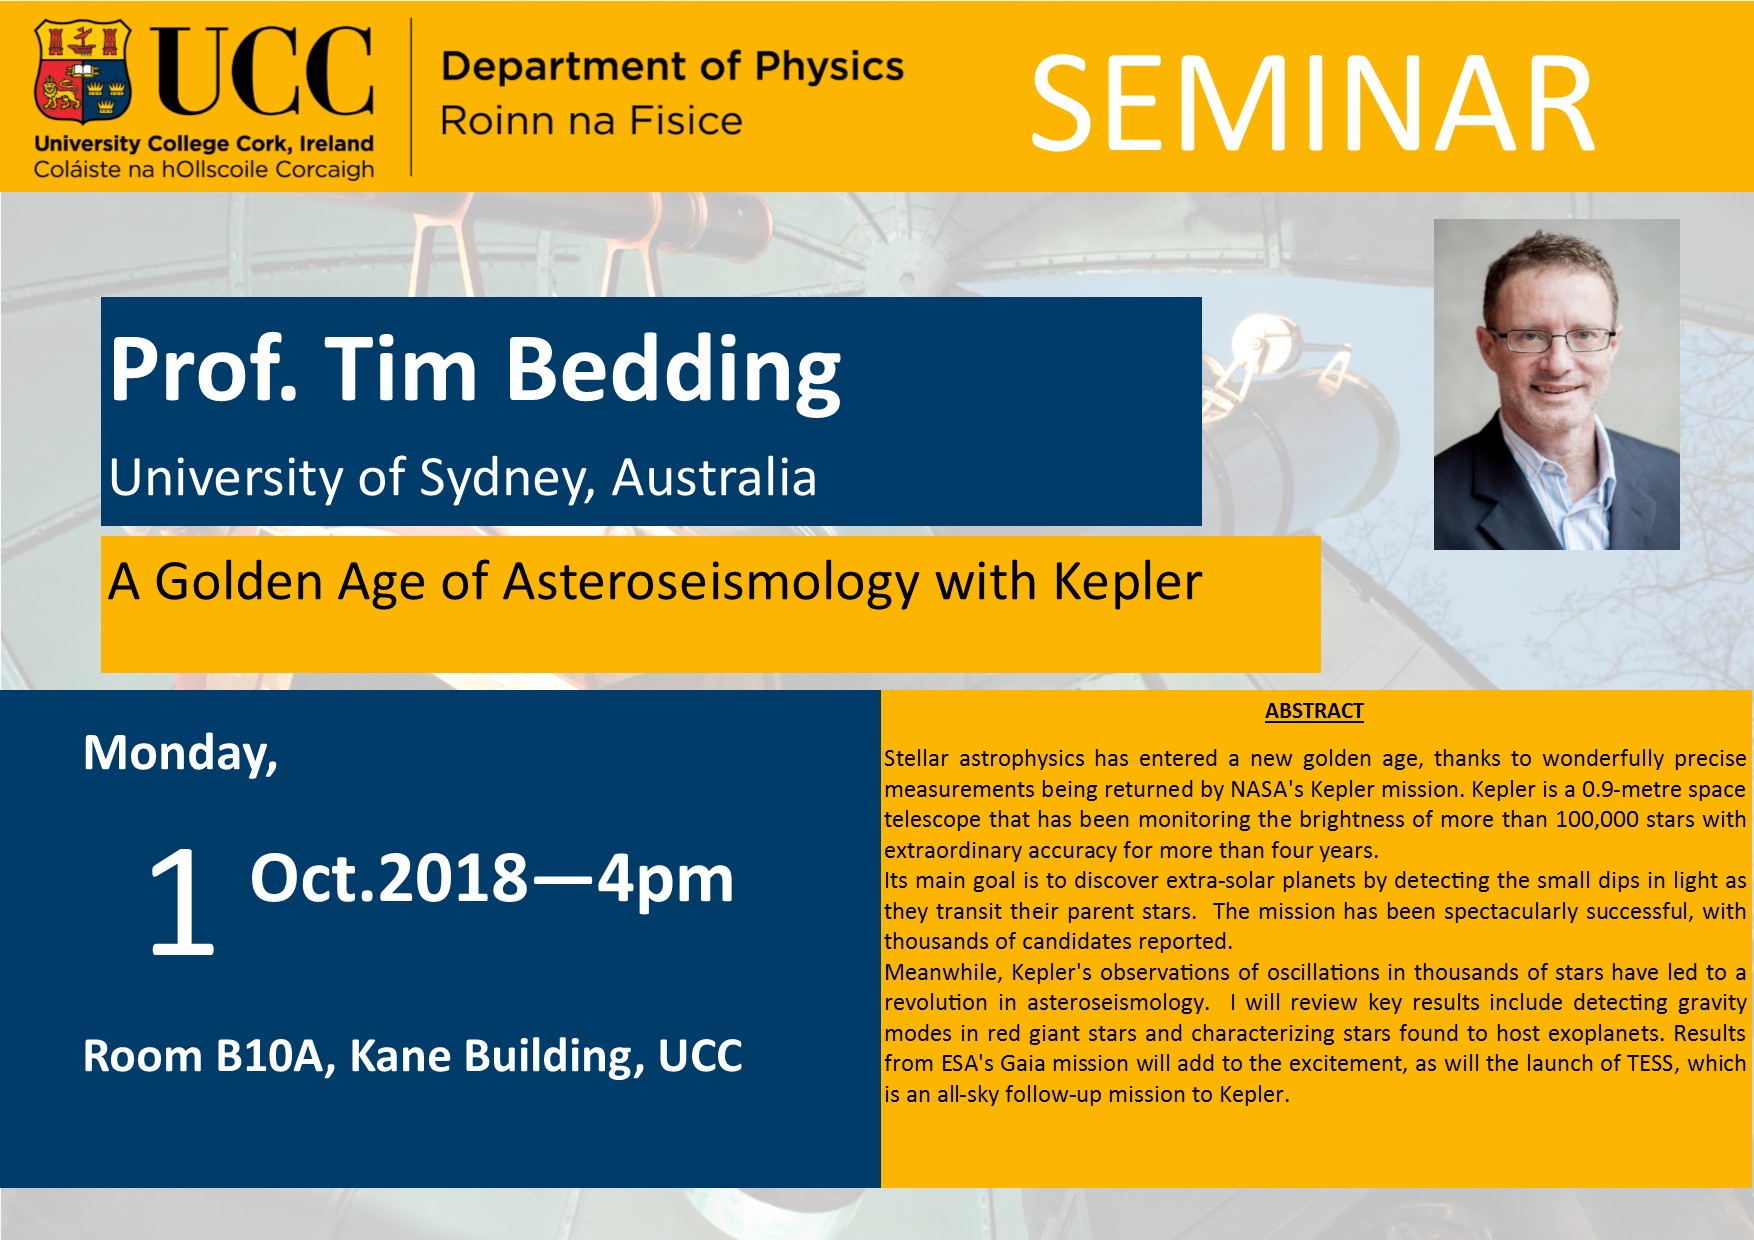 1 Oct 2018 Tim Bedding Seminar Poster